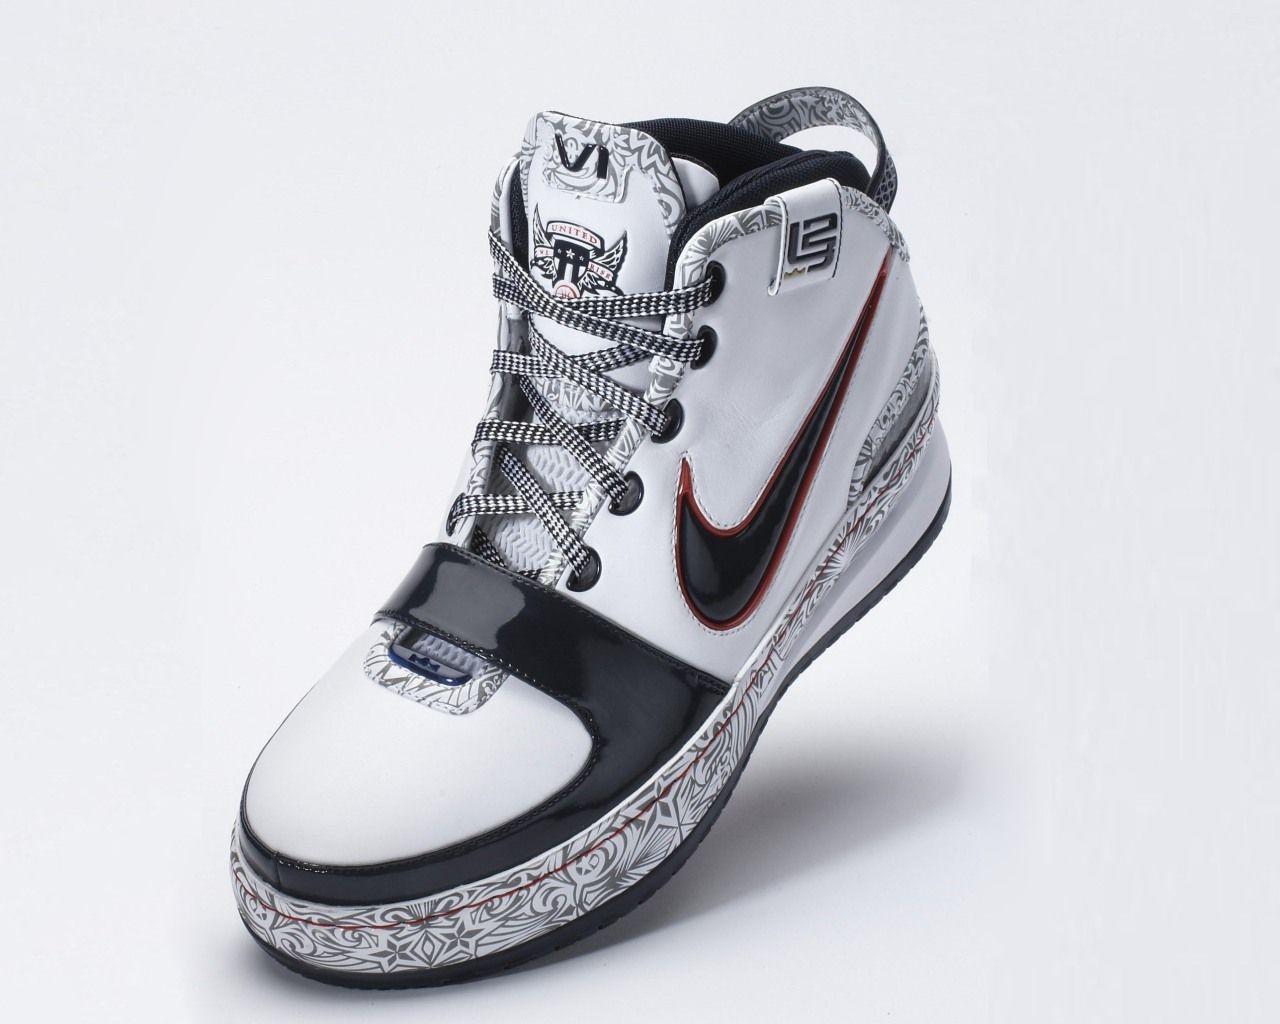 Nike Running Shoes For Women Grey Wallpaper HD. Shoe Clip Art